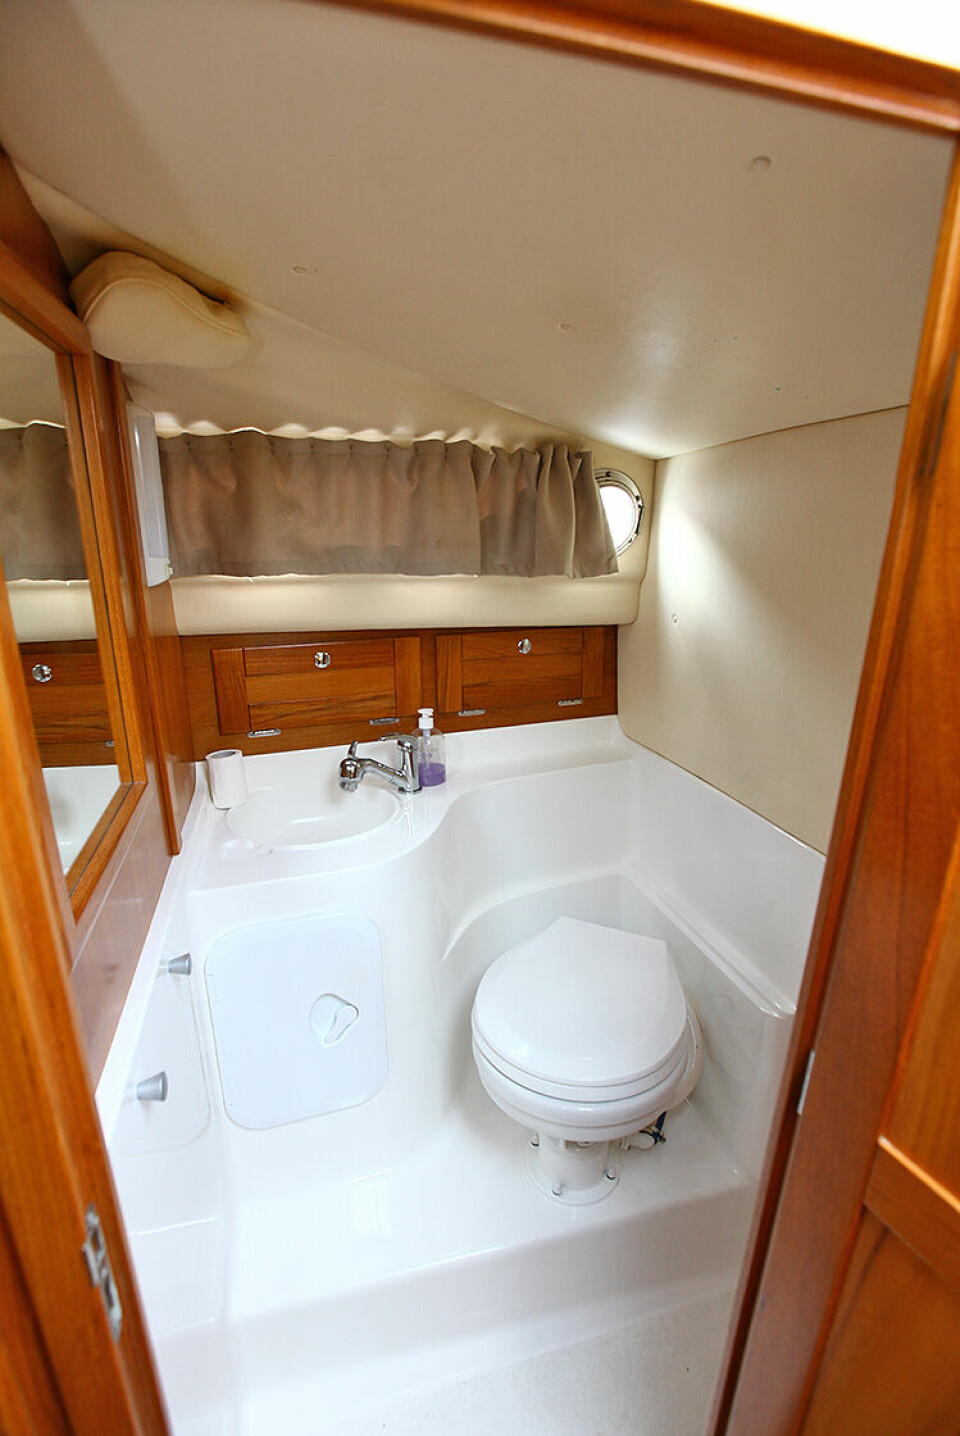 STÅHØYDE: Toalettrommet har tilnærmet full ståhøyde og god plass rundt det elektriske toalettet.